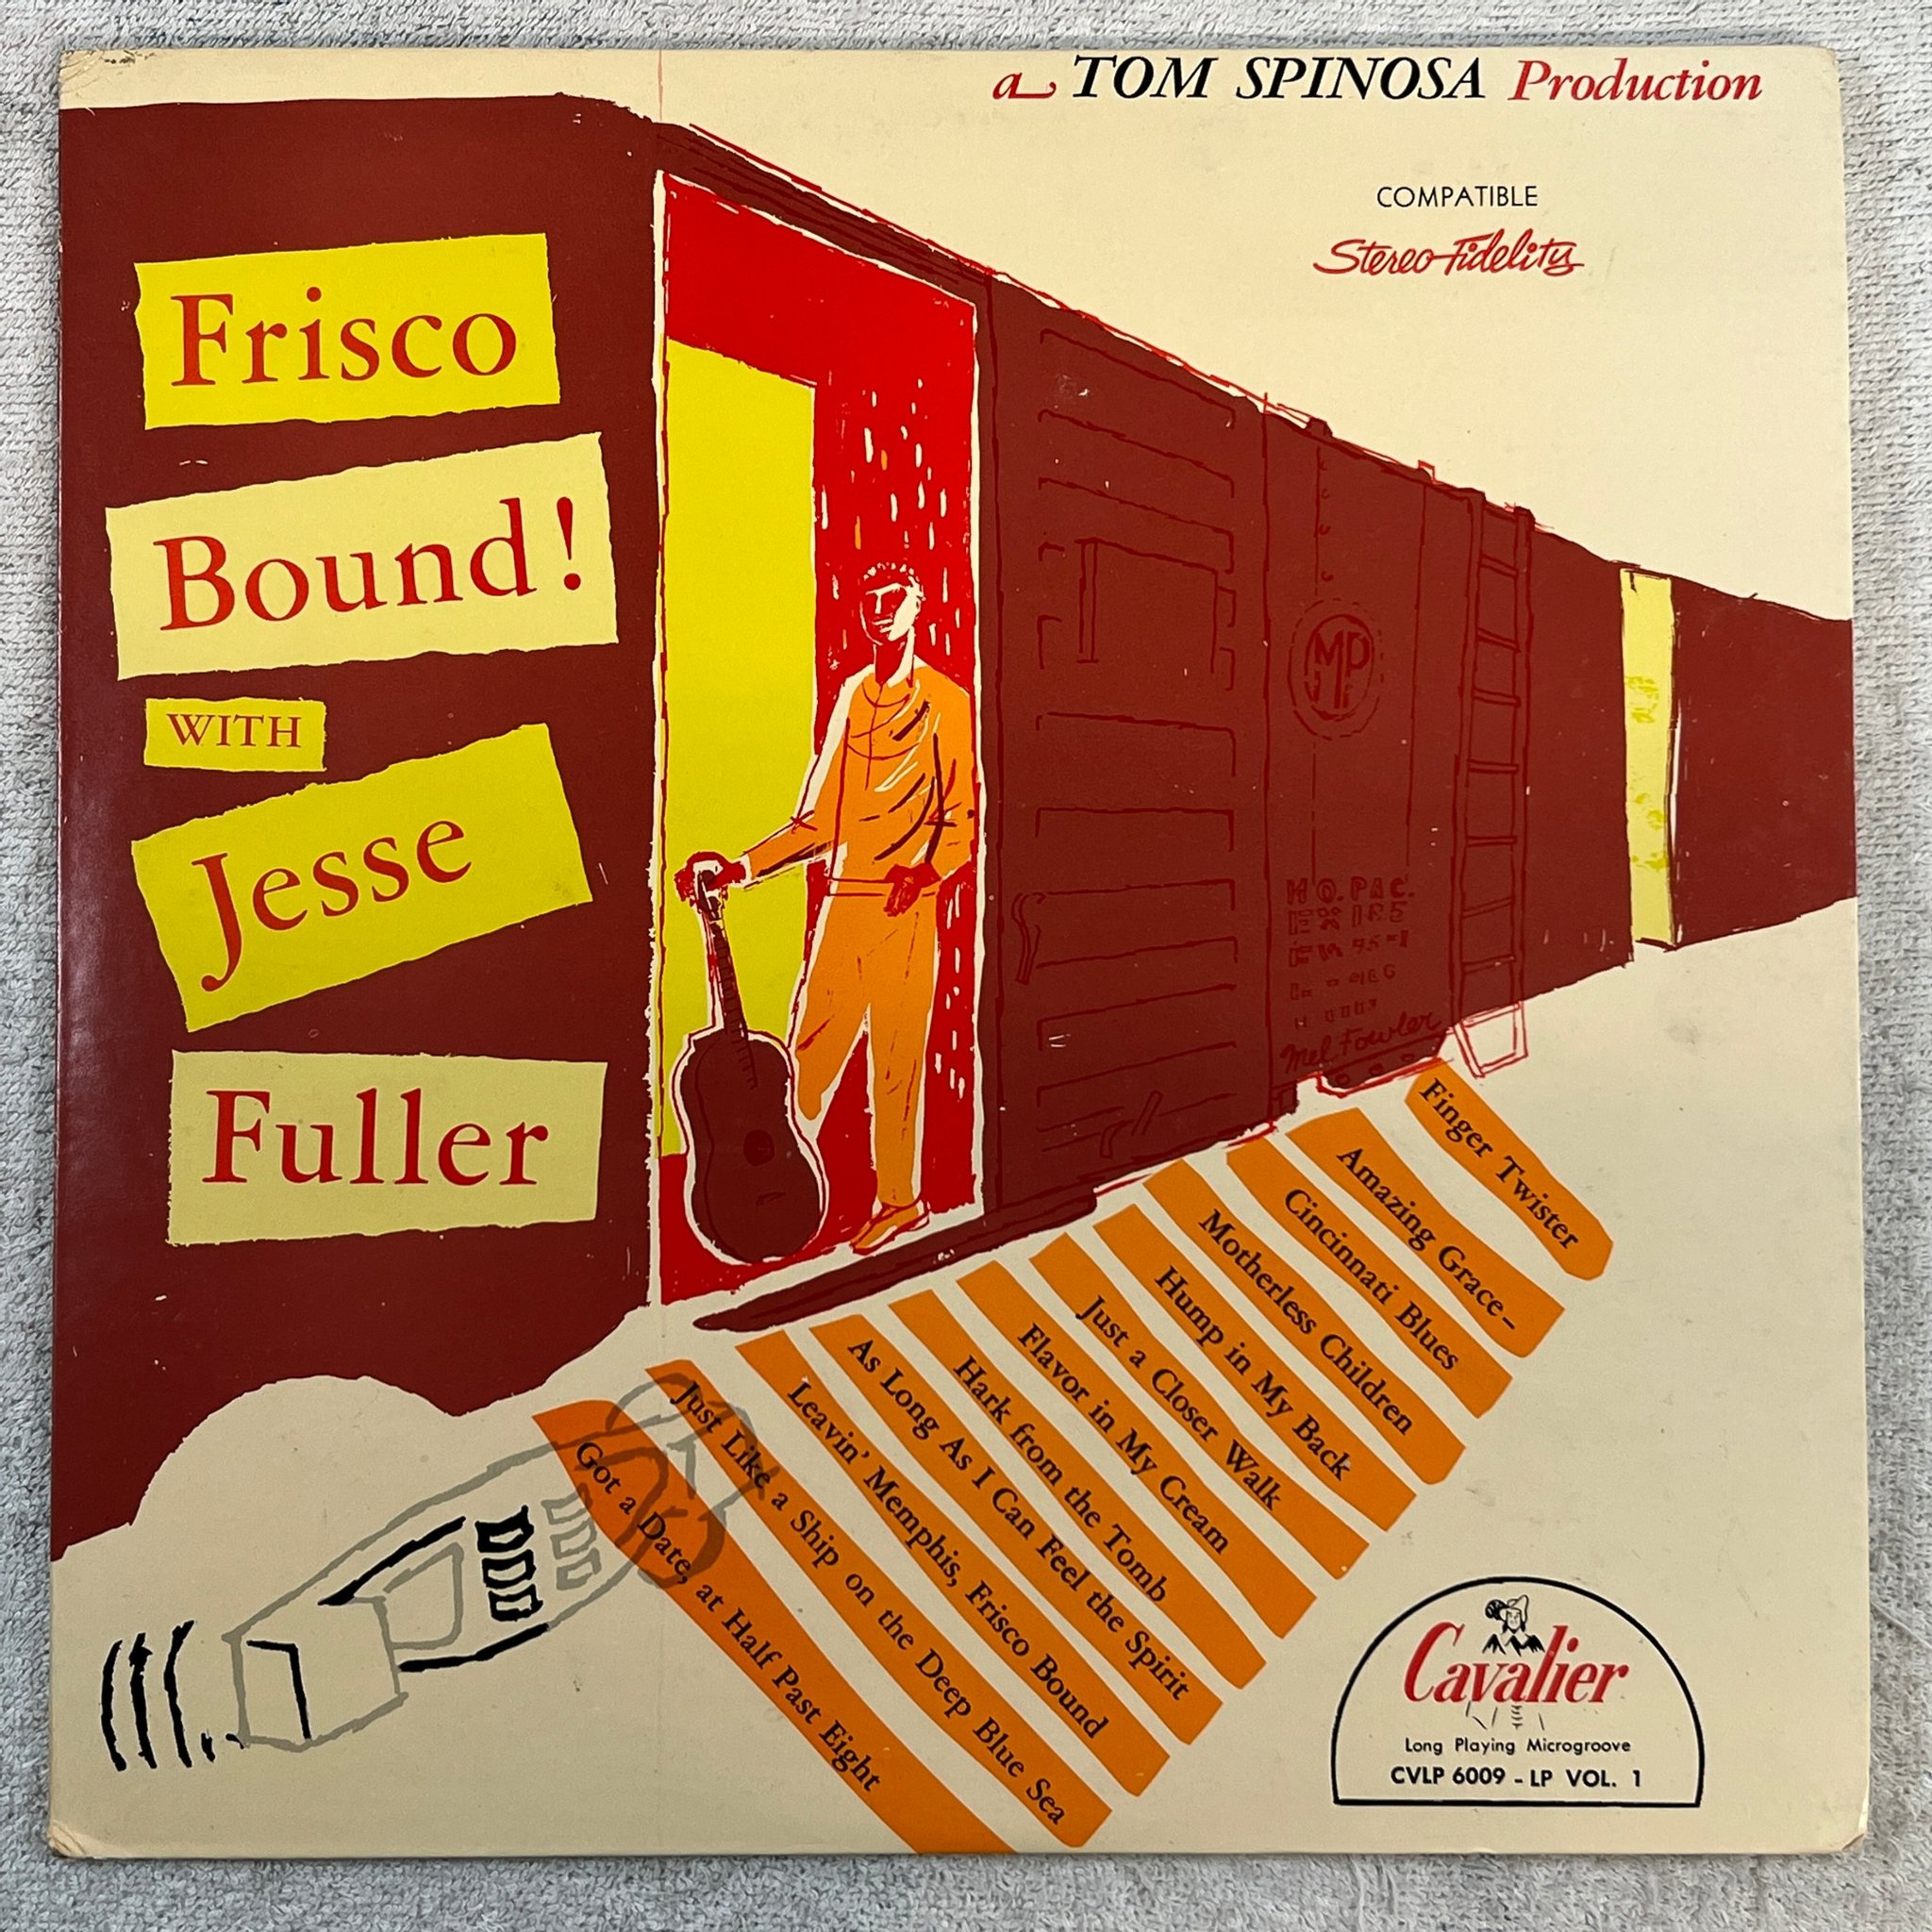 Omslagsbild för skivan JESSE FULLER Frisco bound LP -59 US CAVALIER CVLP 6009 *** rare blues **